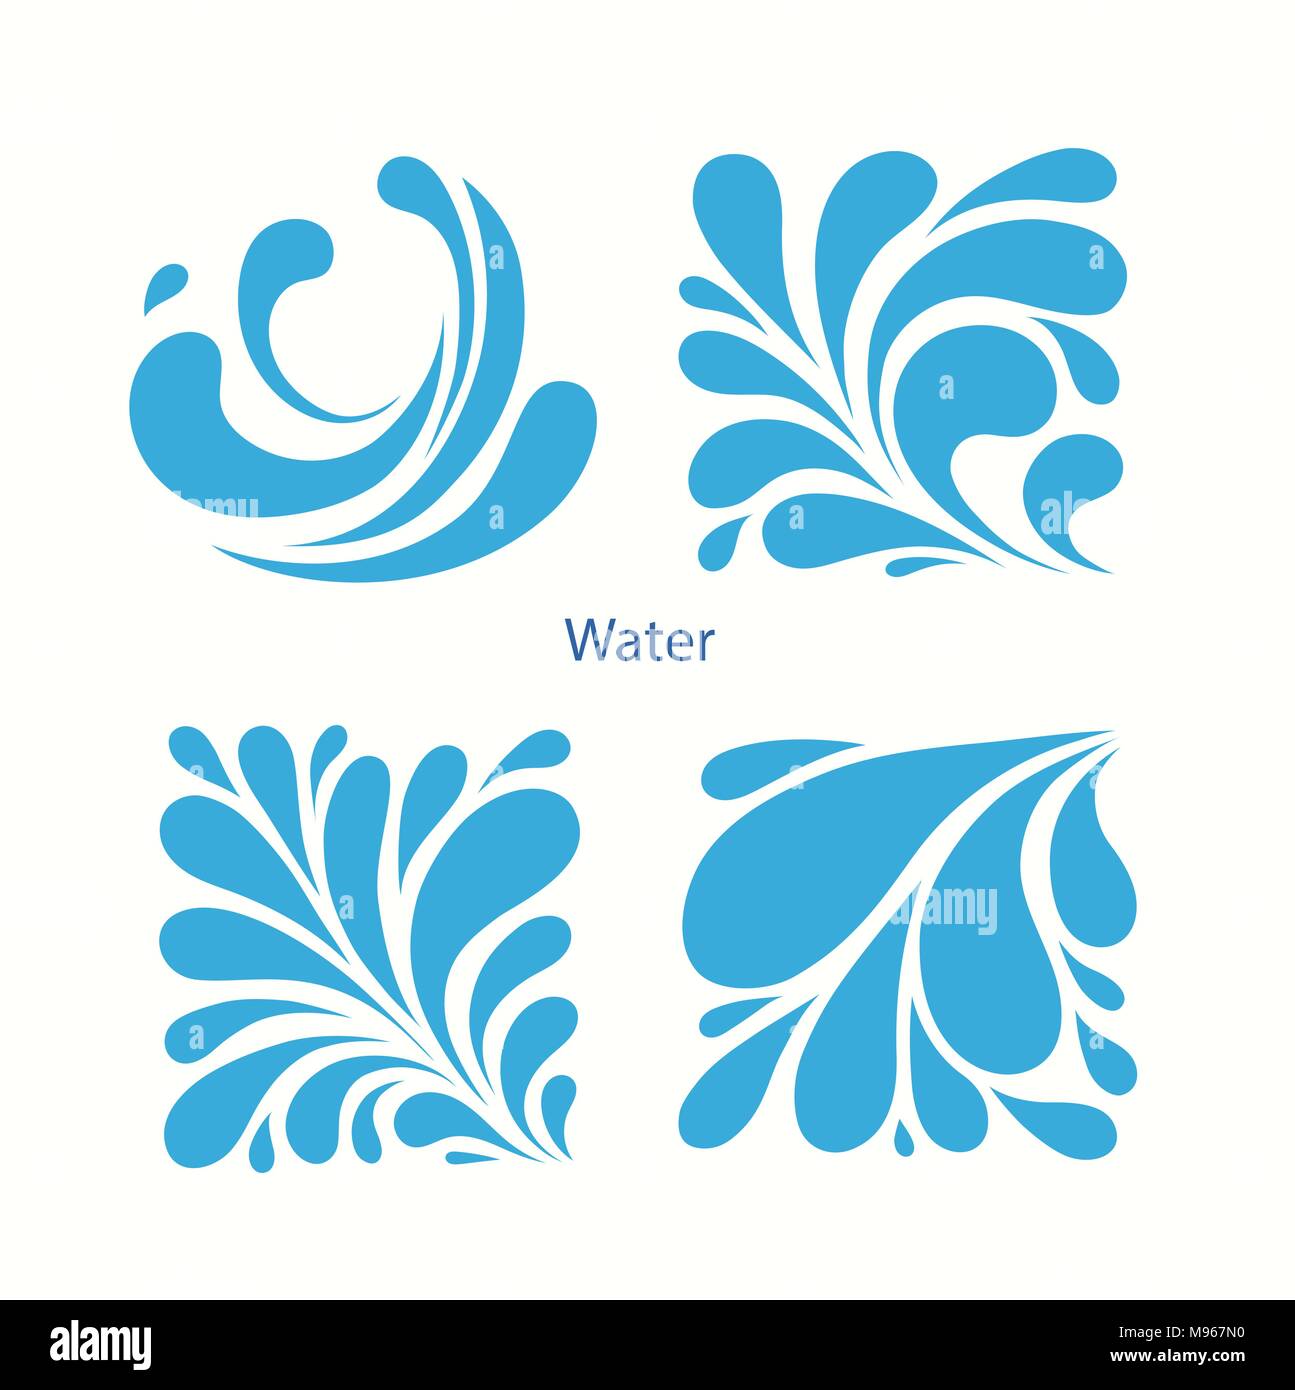 L'eau Gouttes bleu set d'icônes. Icône aqua carré. Illustration de Vecteur